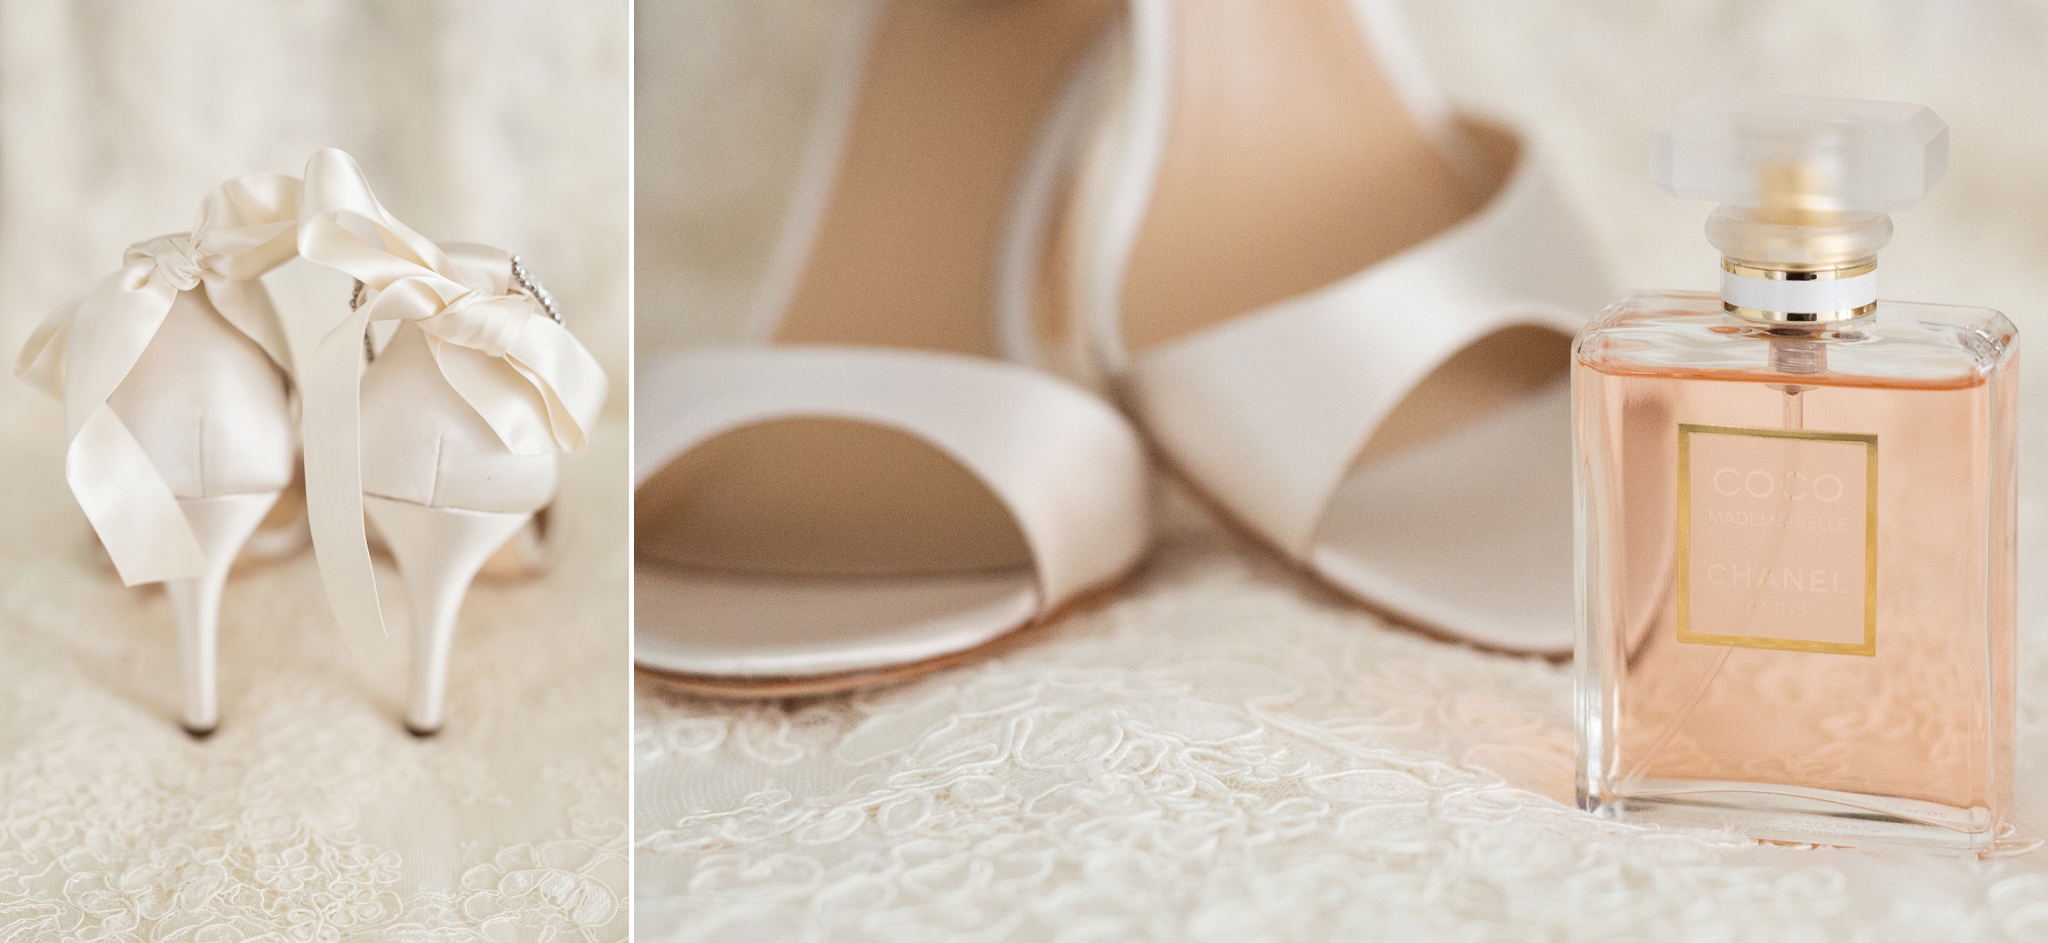 brides shoes photo edmonton